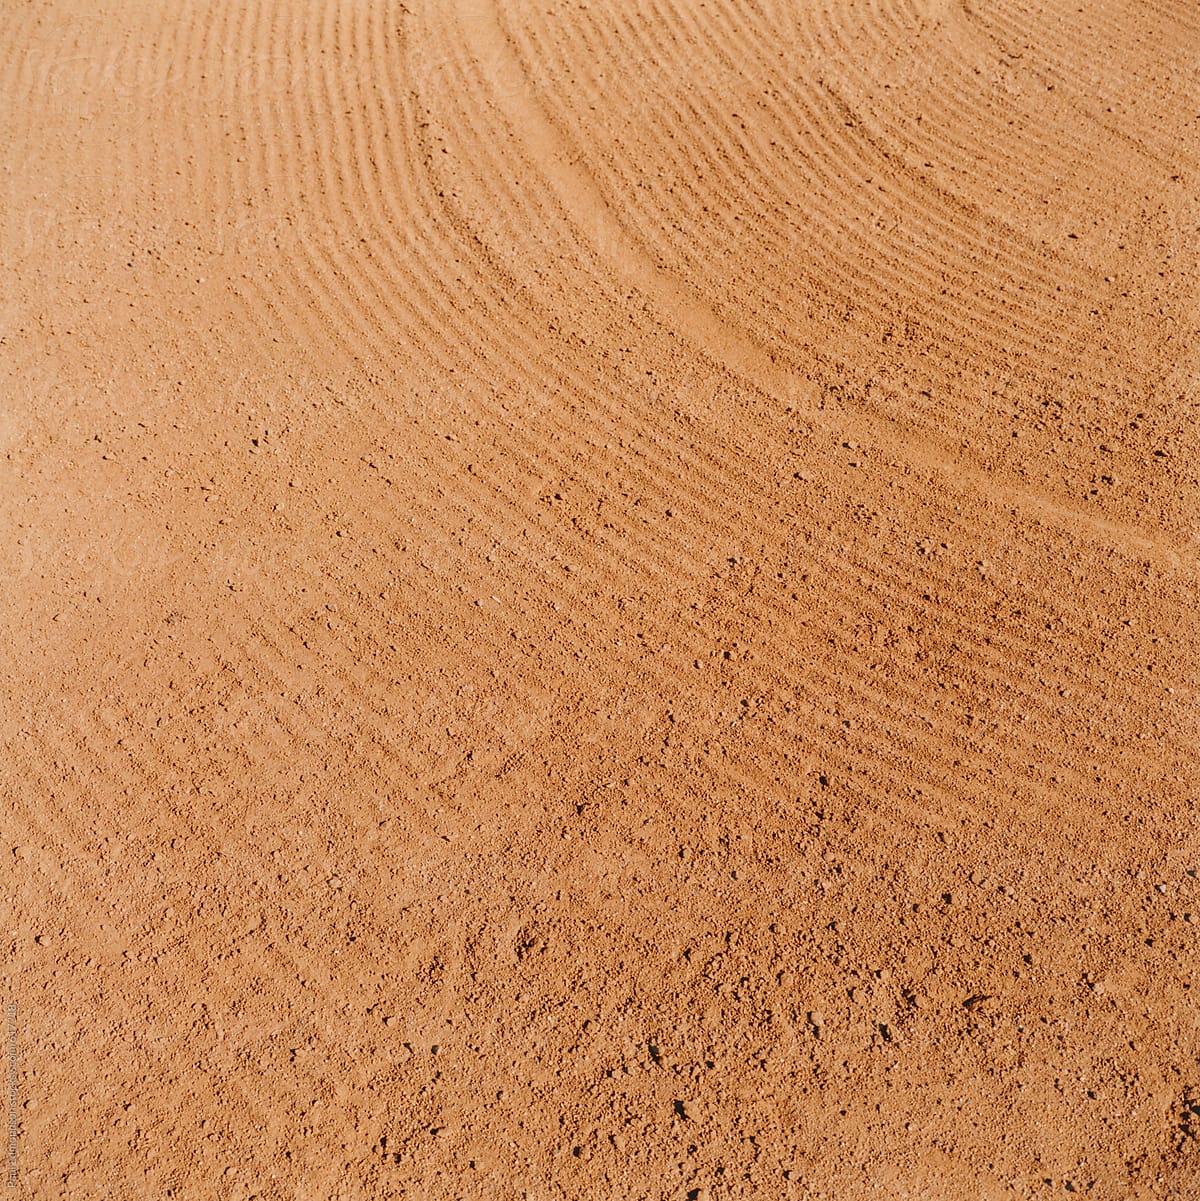 baseball field dirt texture